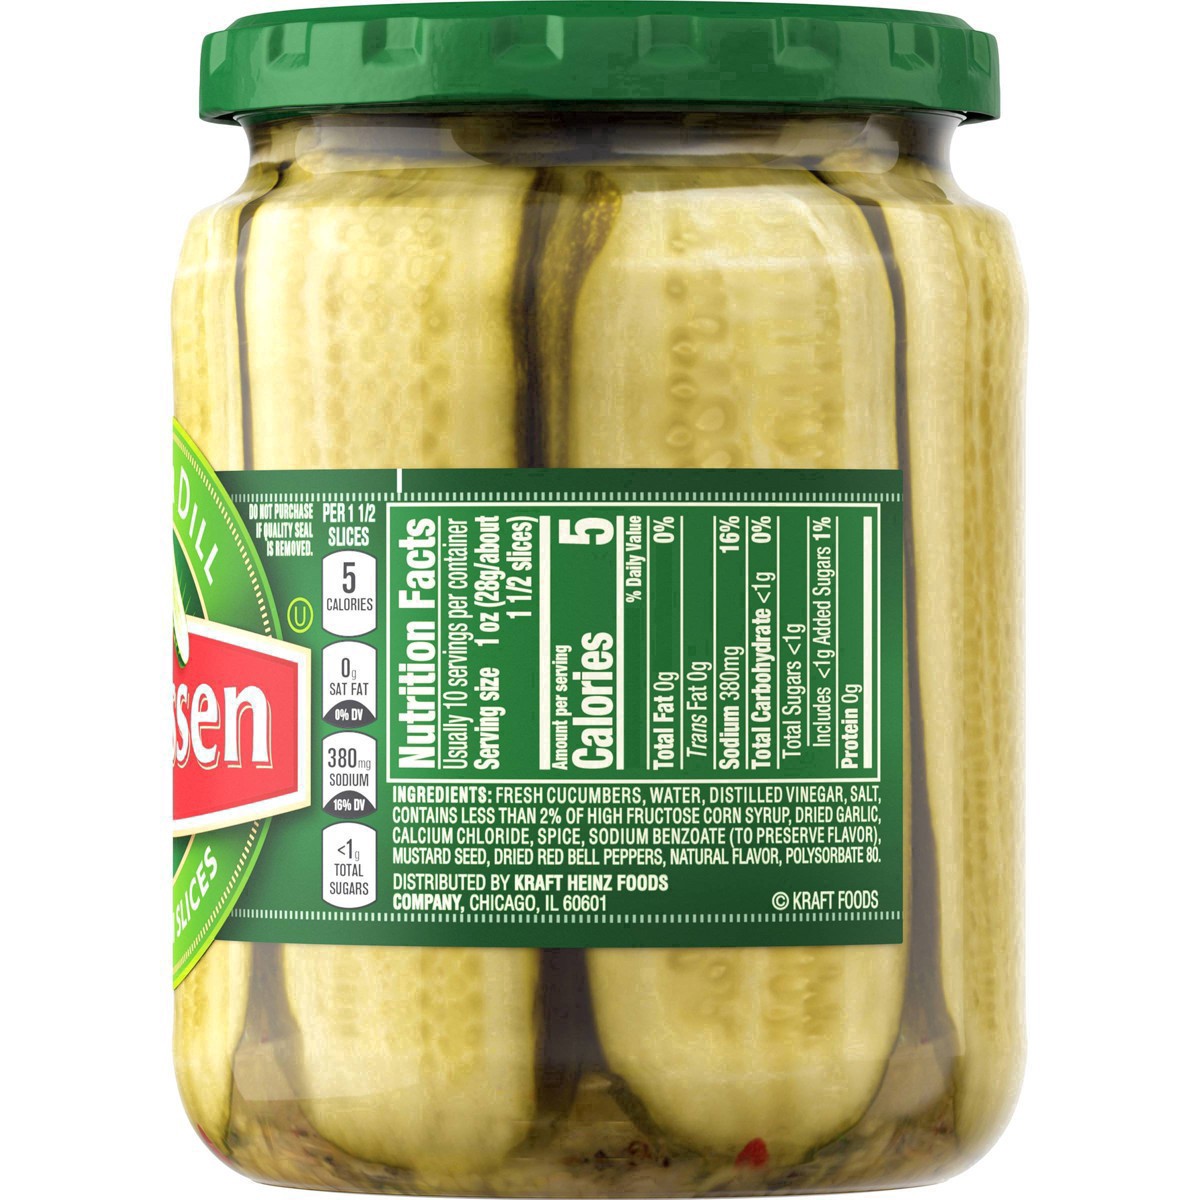 slide 34 of 144, Claussen Kosher Dill Pickle Sandwich Slices, 20 fl. oz. Jar, 20 fl oz